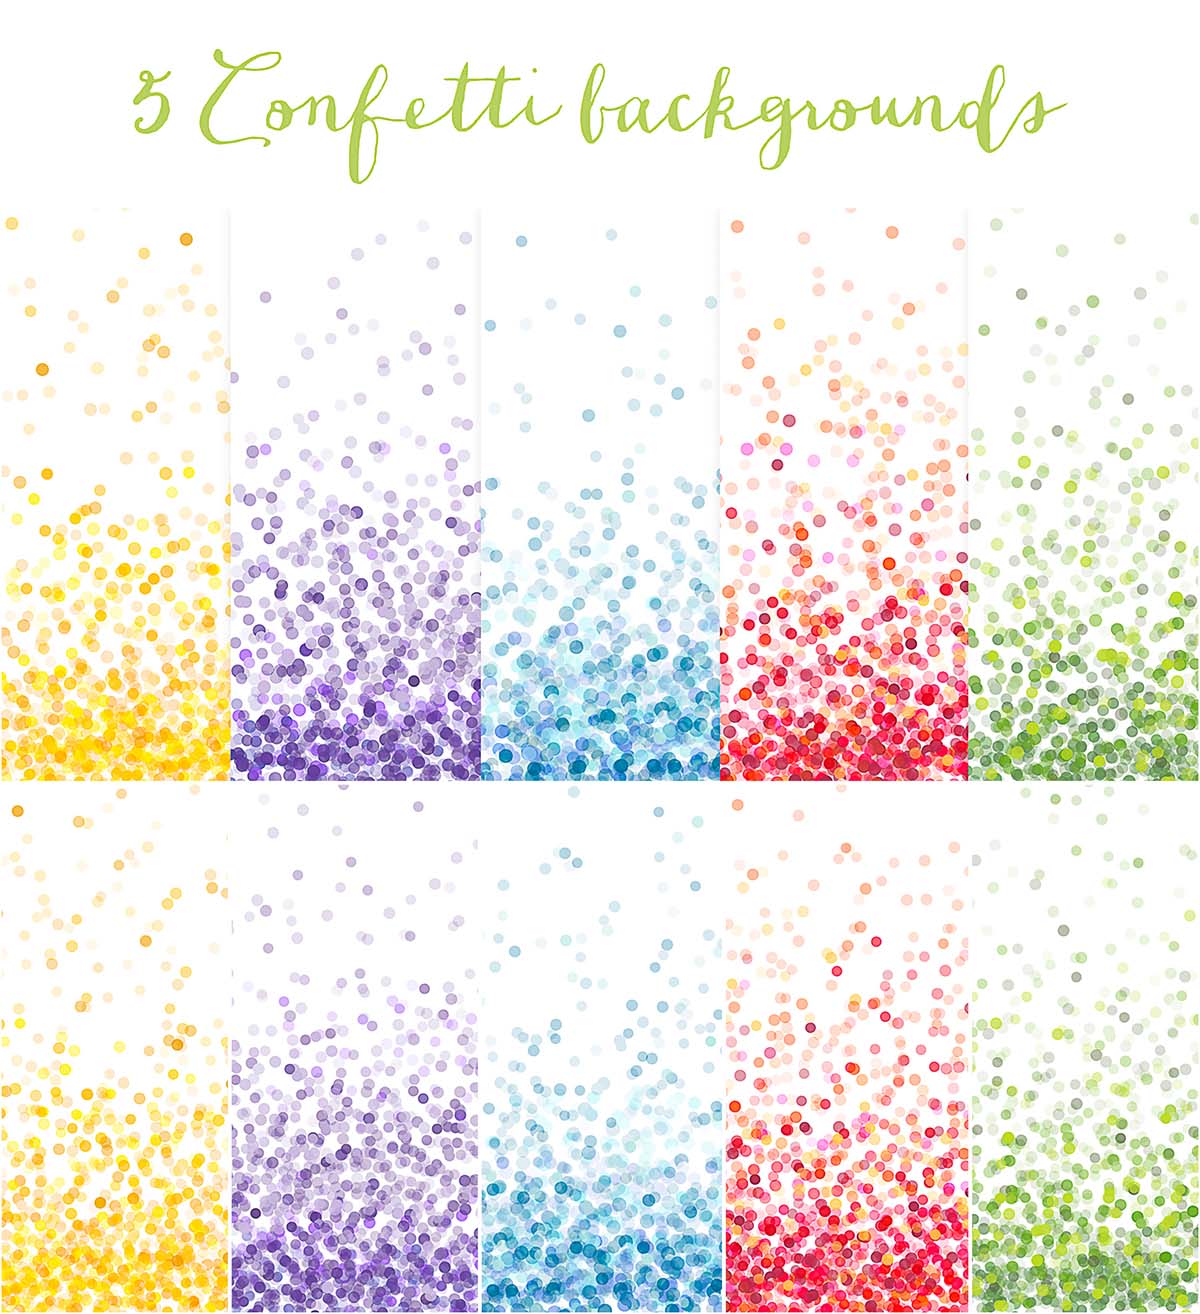 Confetti bright backgrounds